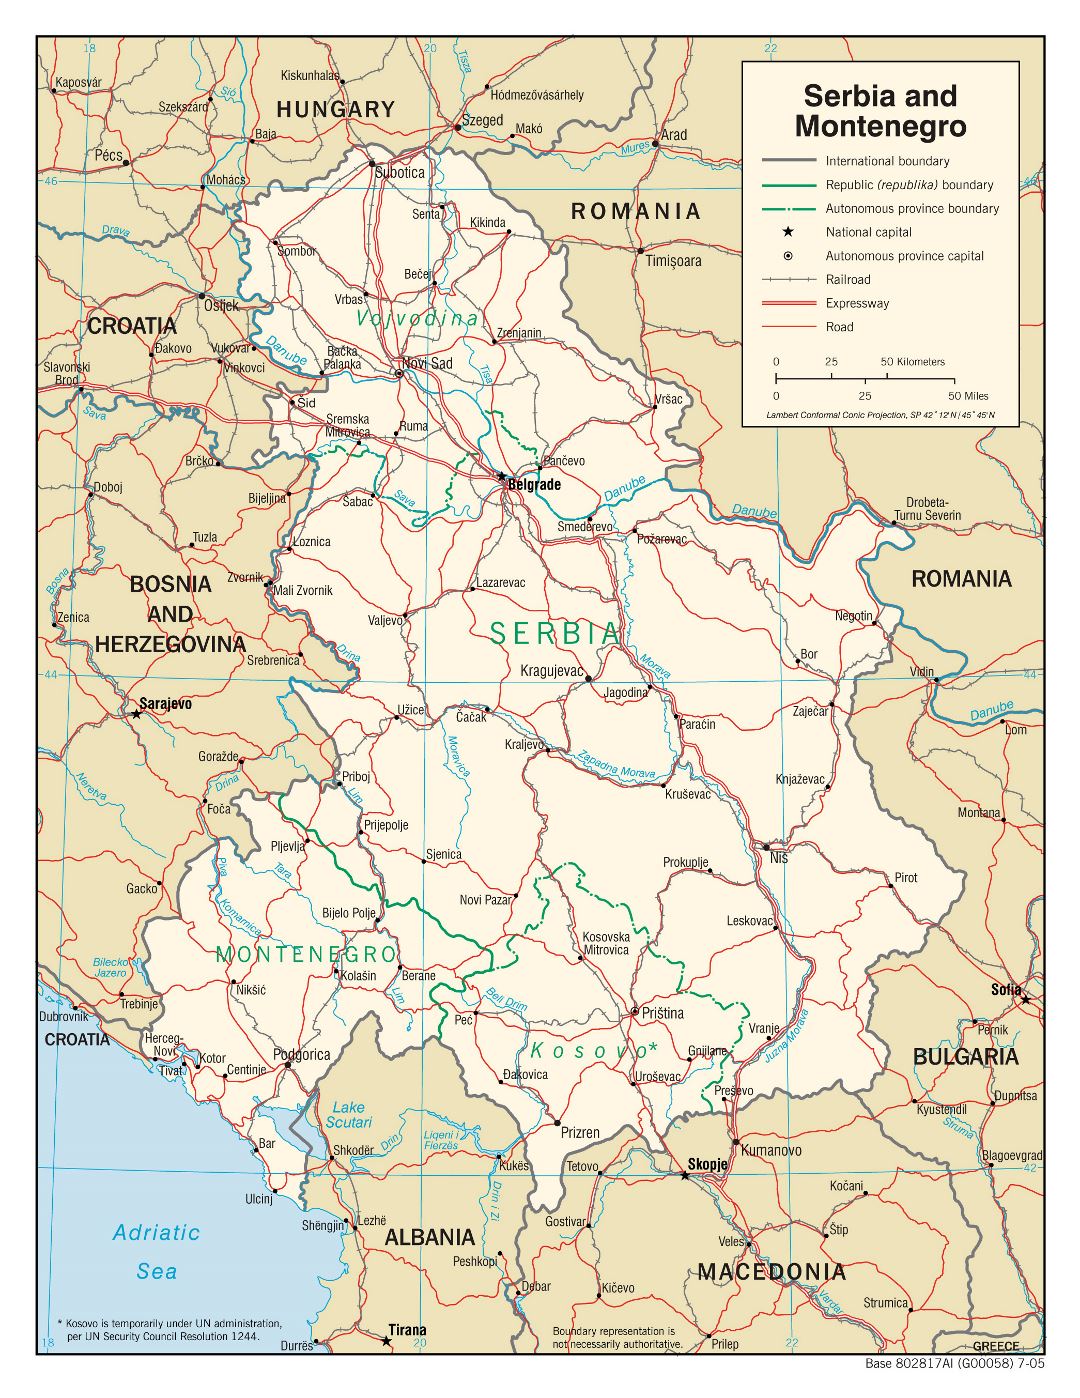 Grande detallado mapa político de Serbia y Montenegro con carreteras, ferrocarriles y ciudades principales - 2005